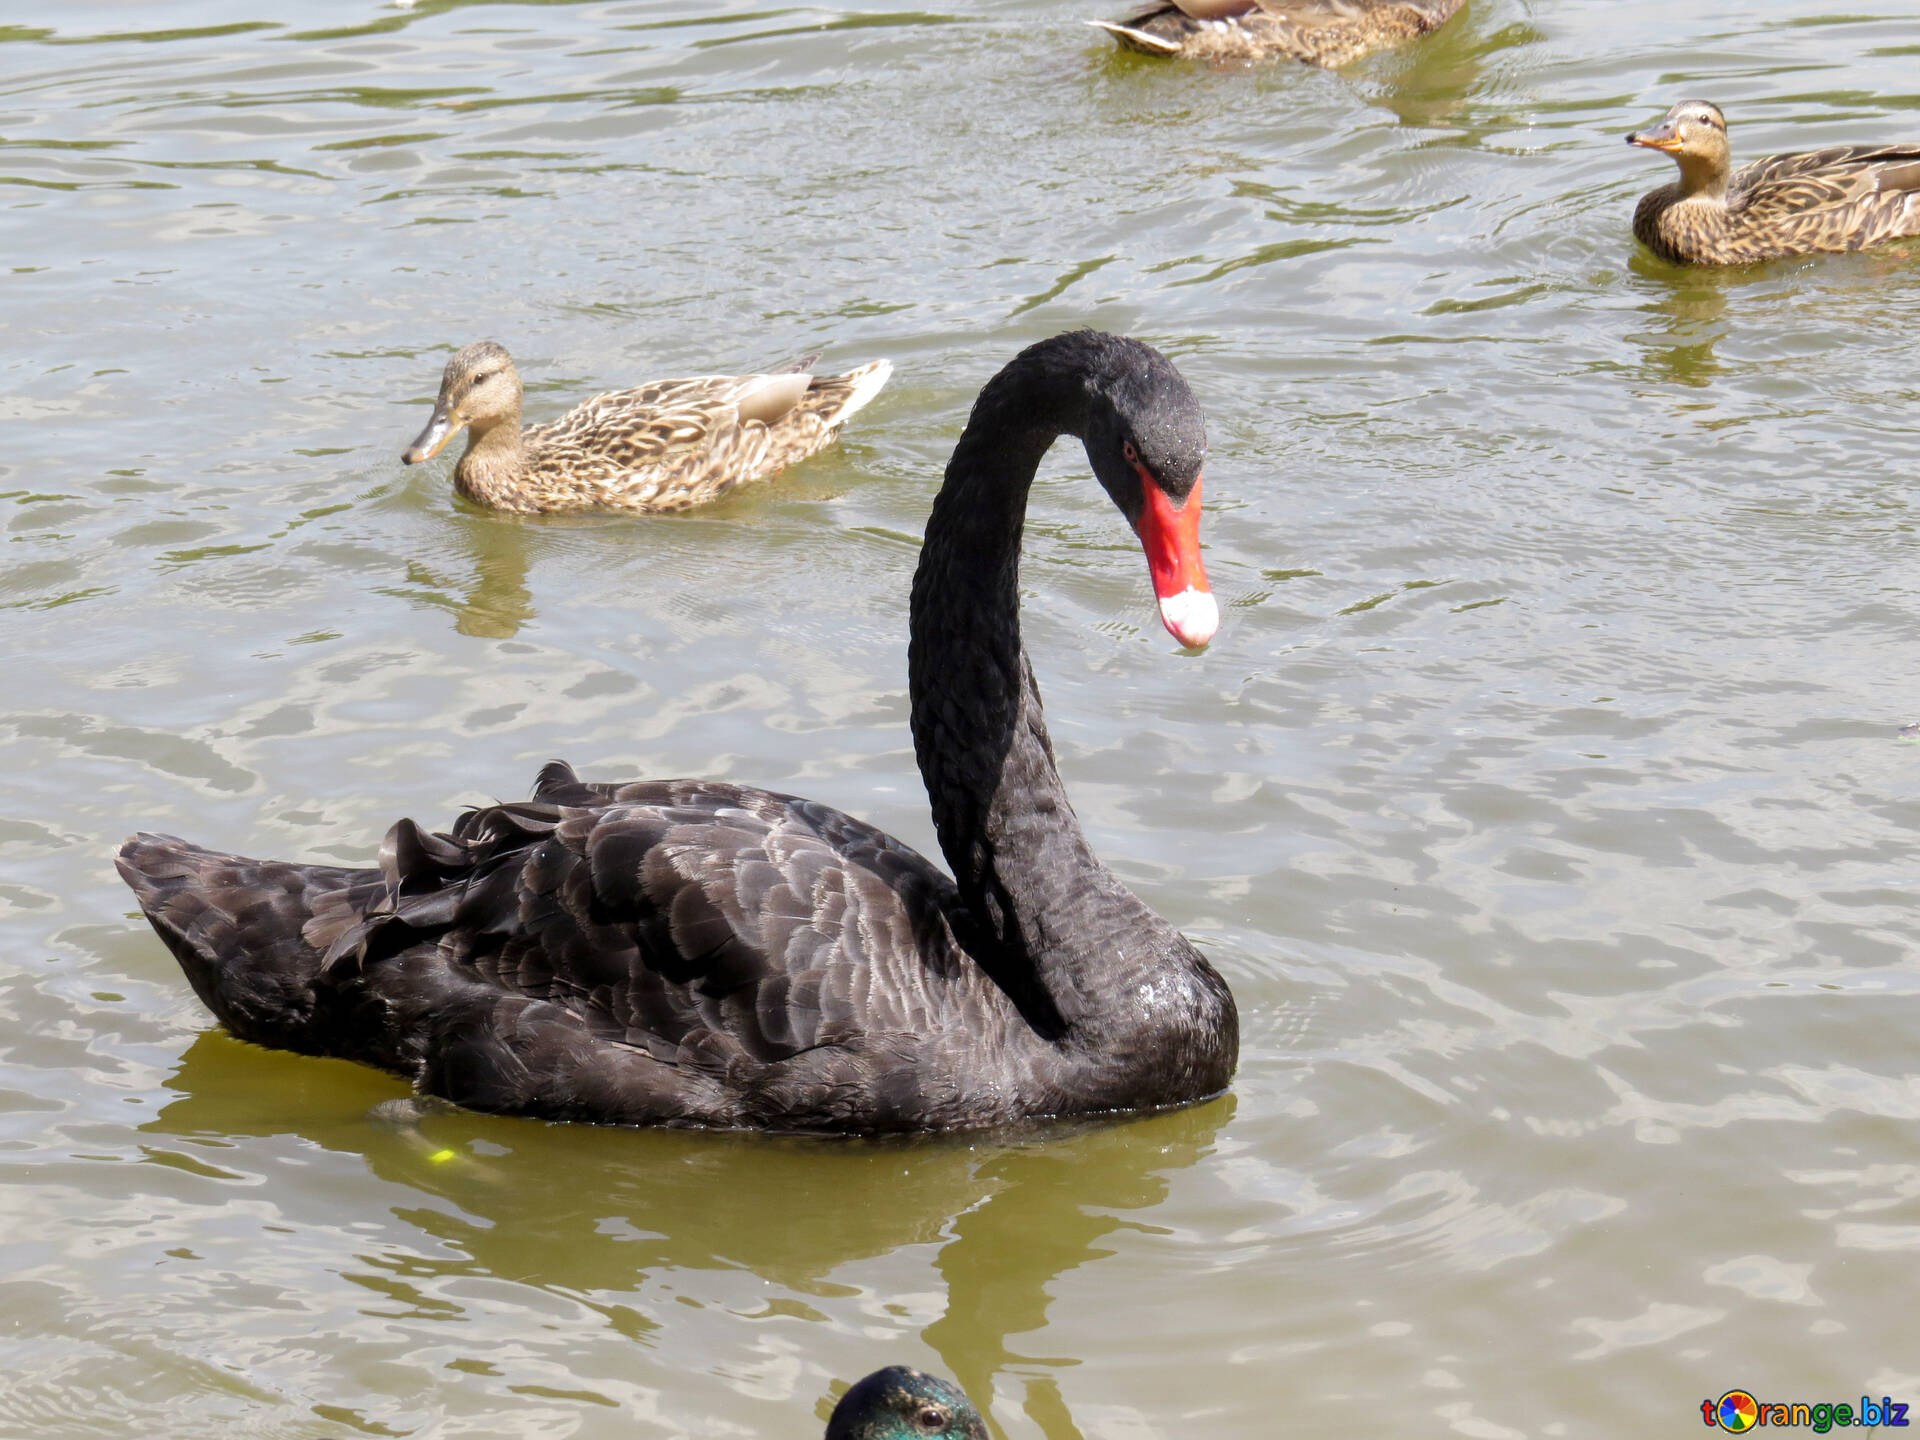 Nerve voksenalderen mulighed Black swans image big black swan goose on water with female mallard ducks  images park № 54337 | torange.biz ~ free pics on cc-by license